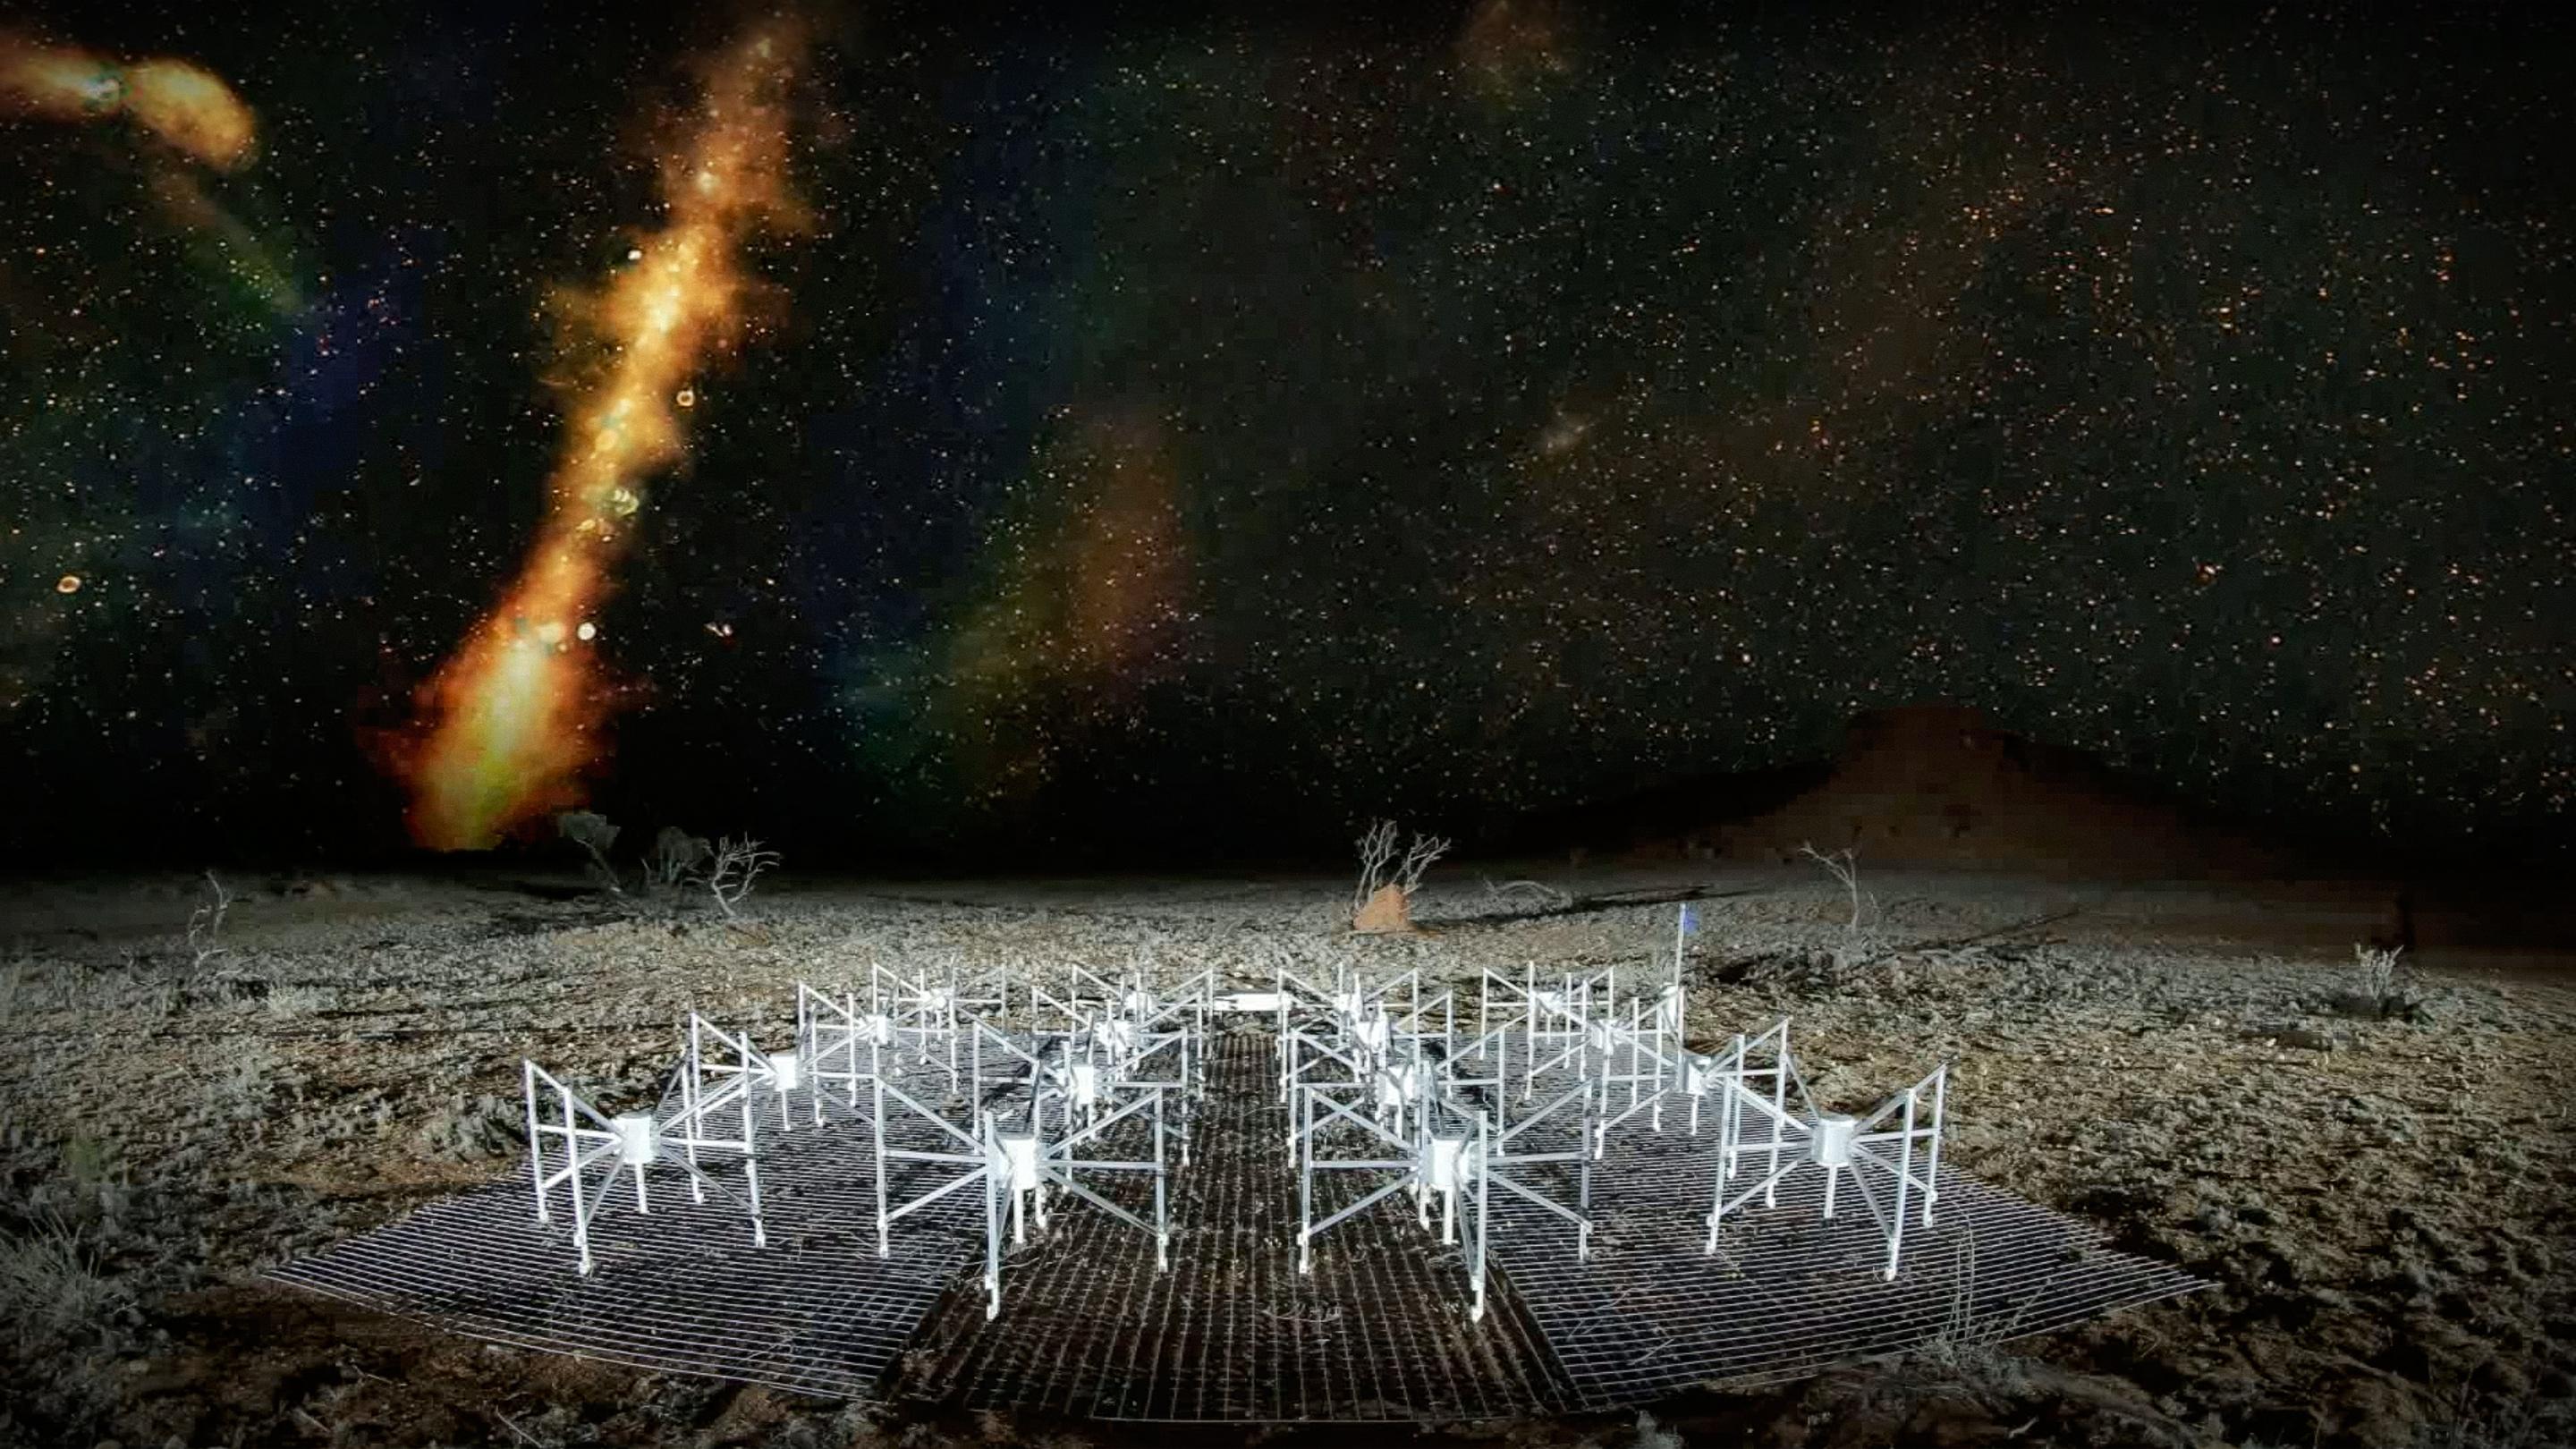 سخنرانی تد : چگونه تلسکوپ های رادیویی به ما کهکشان های دیده نشده را نشان می دهند